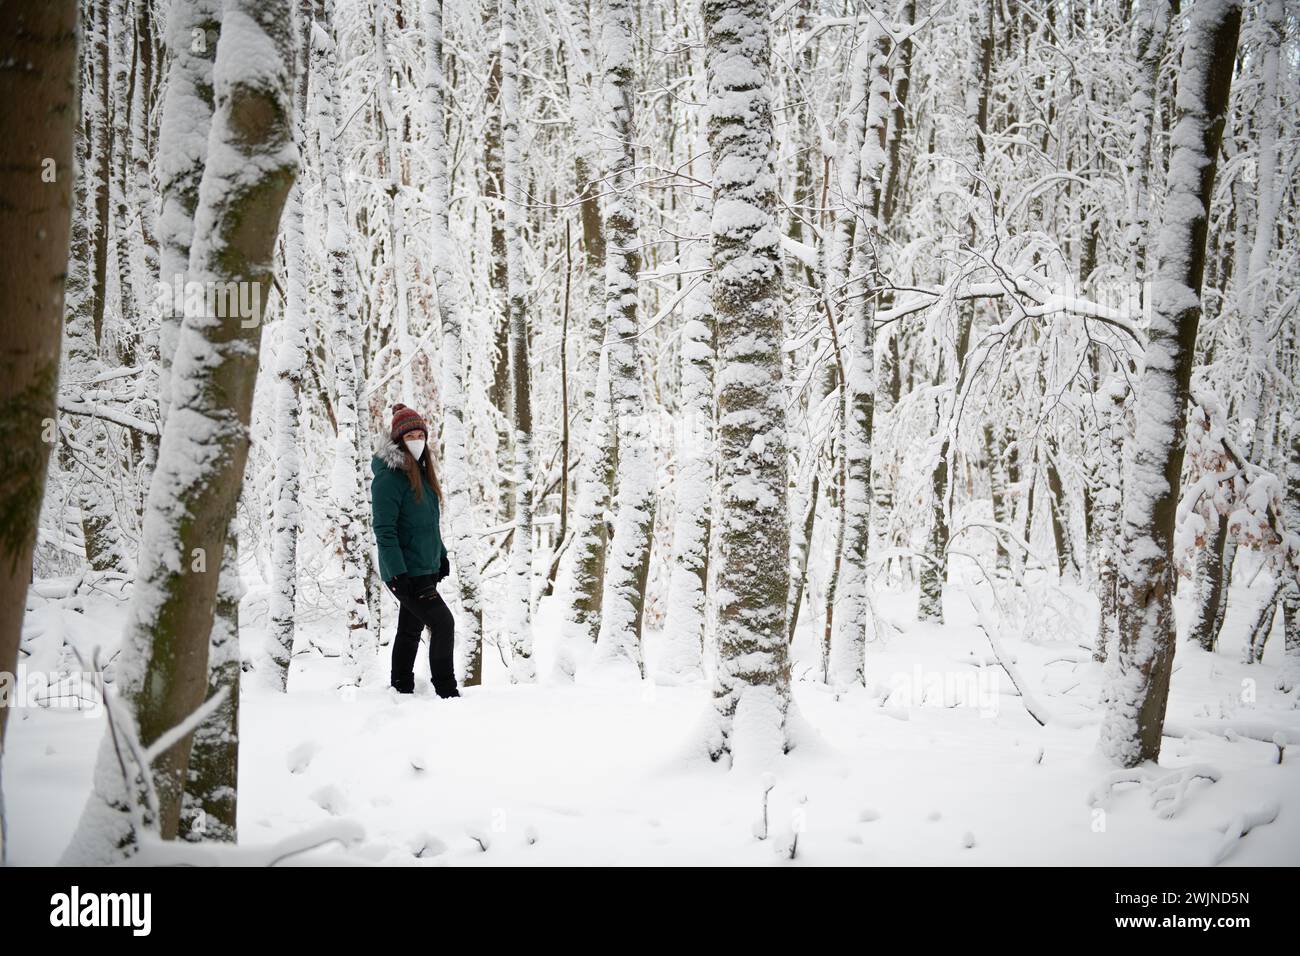 Eine Einzelfigur steht in einem Wald, der von Schnee bedeckt ist, mit weißen Bäumen, die sich in den Hintergrund erstrecken. Die Person trägt eine türkisfarbene Jacke und Stockfoto